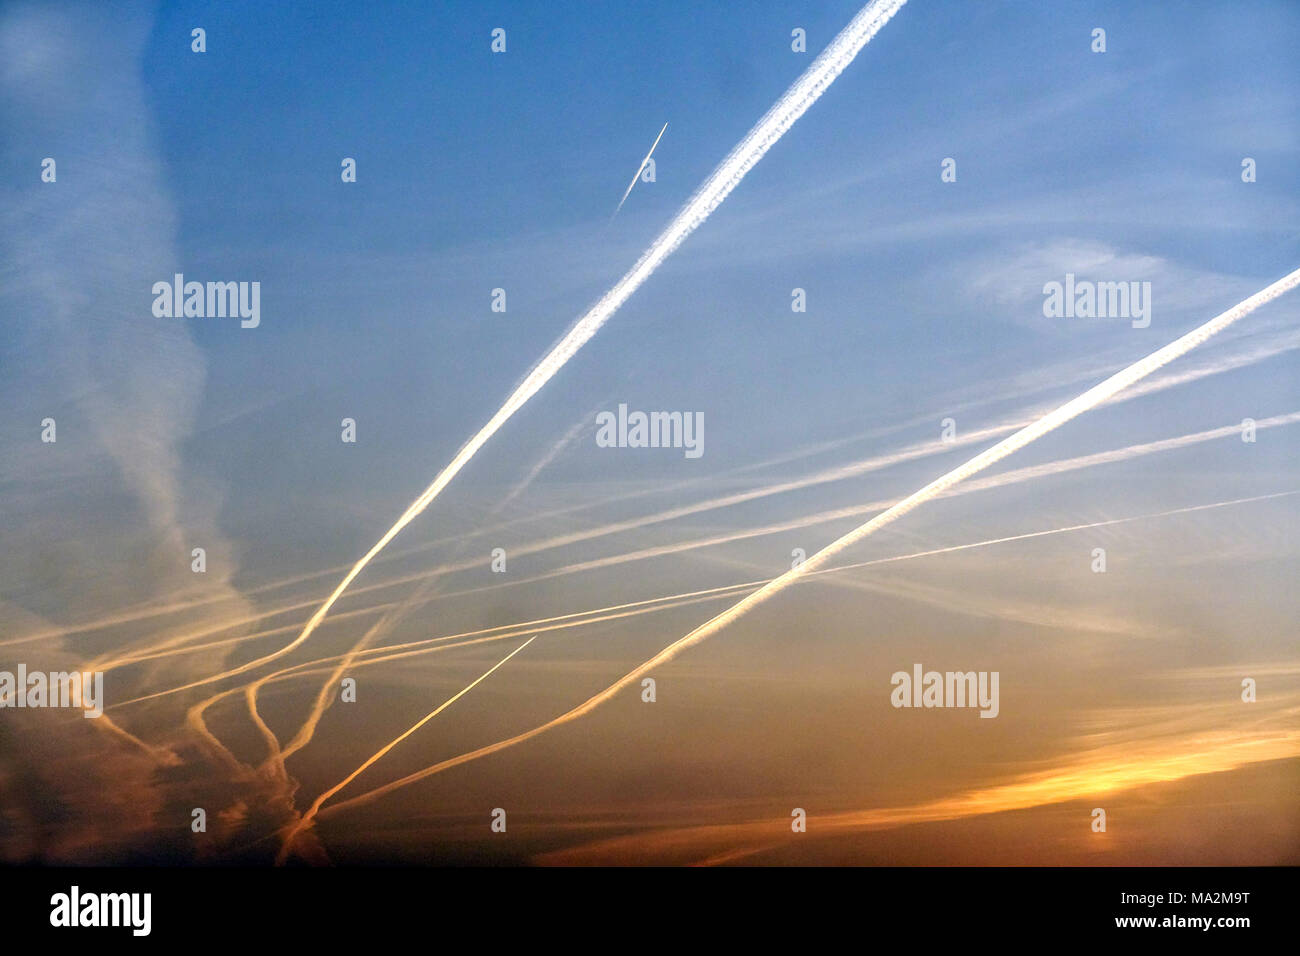 Traînées de vapeur d'avion au-dessus d'un ciel d'aube traînées d'avion changement climatique-émissions de carbone, chemtrails Banque D'Images